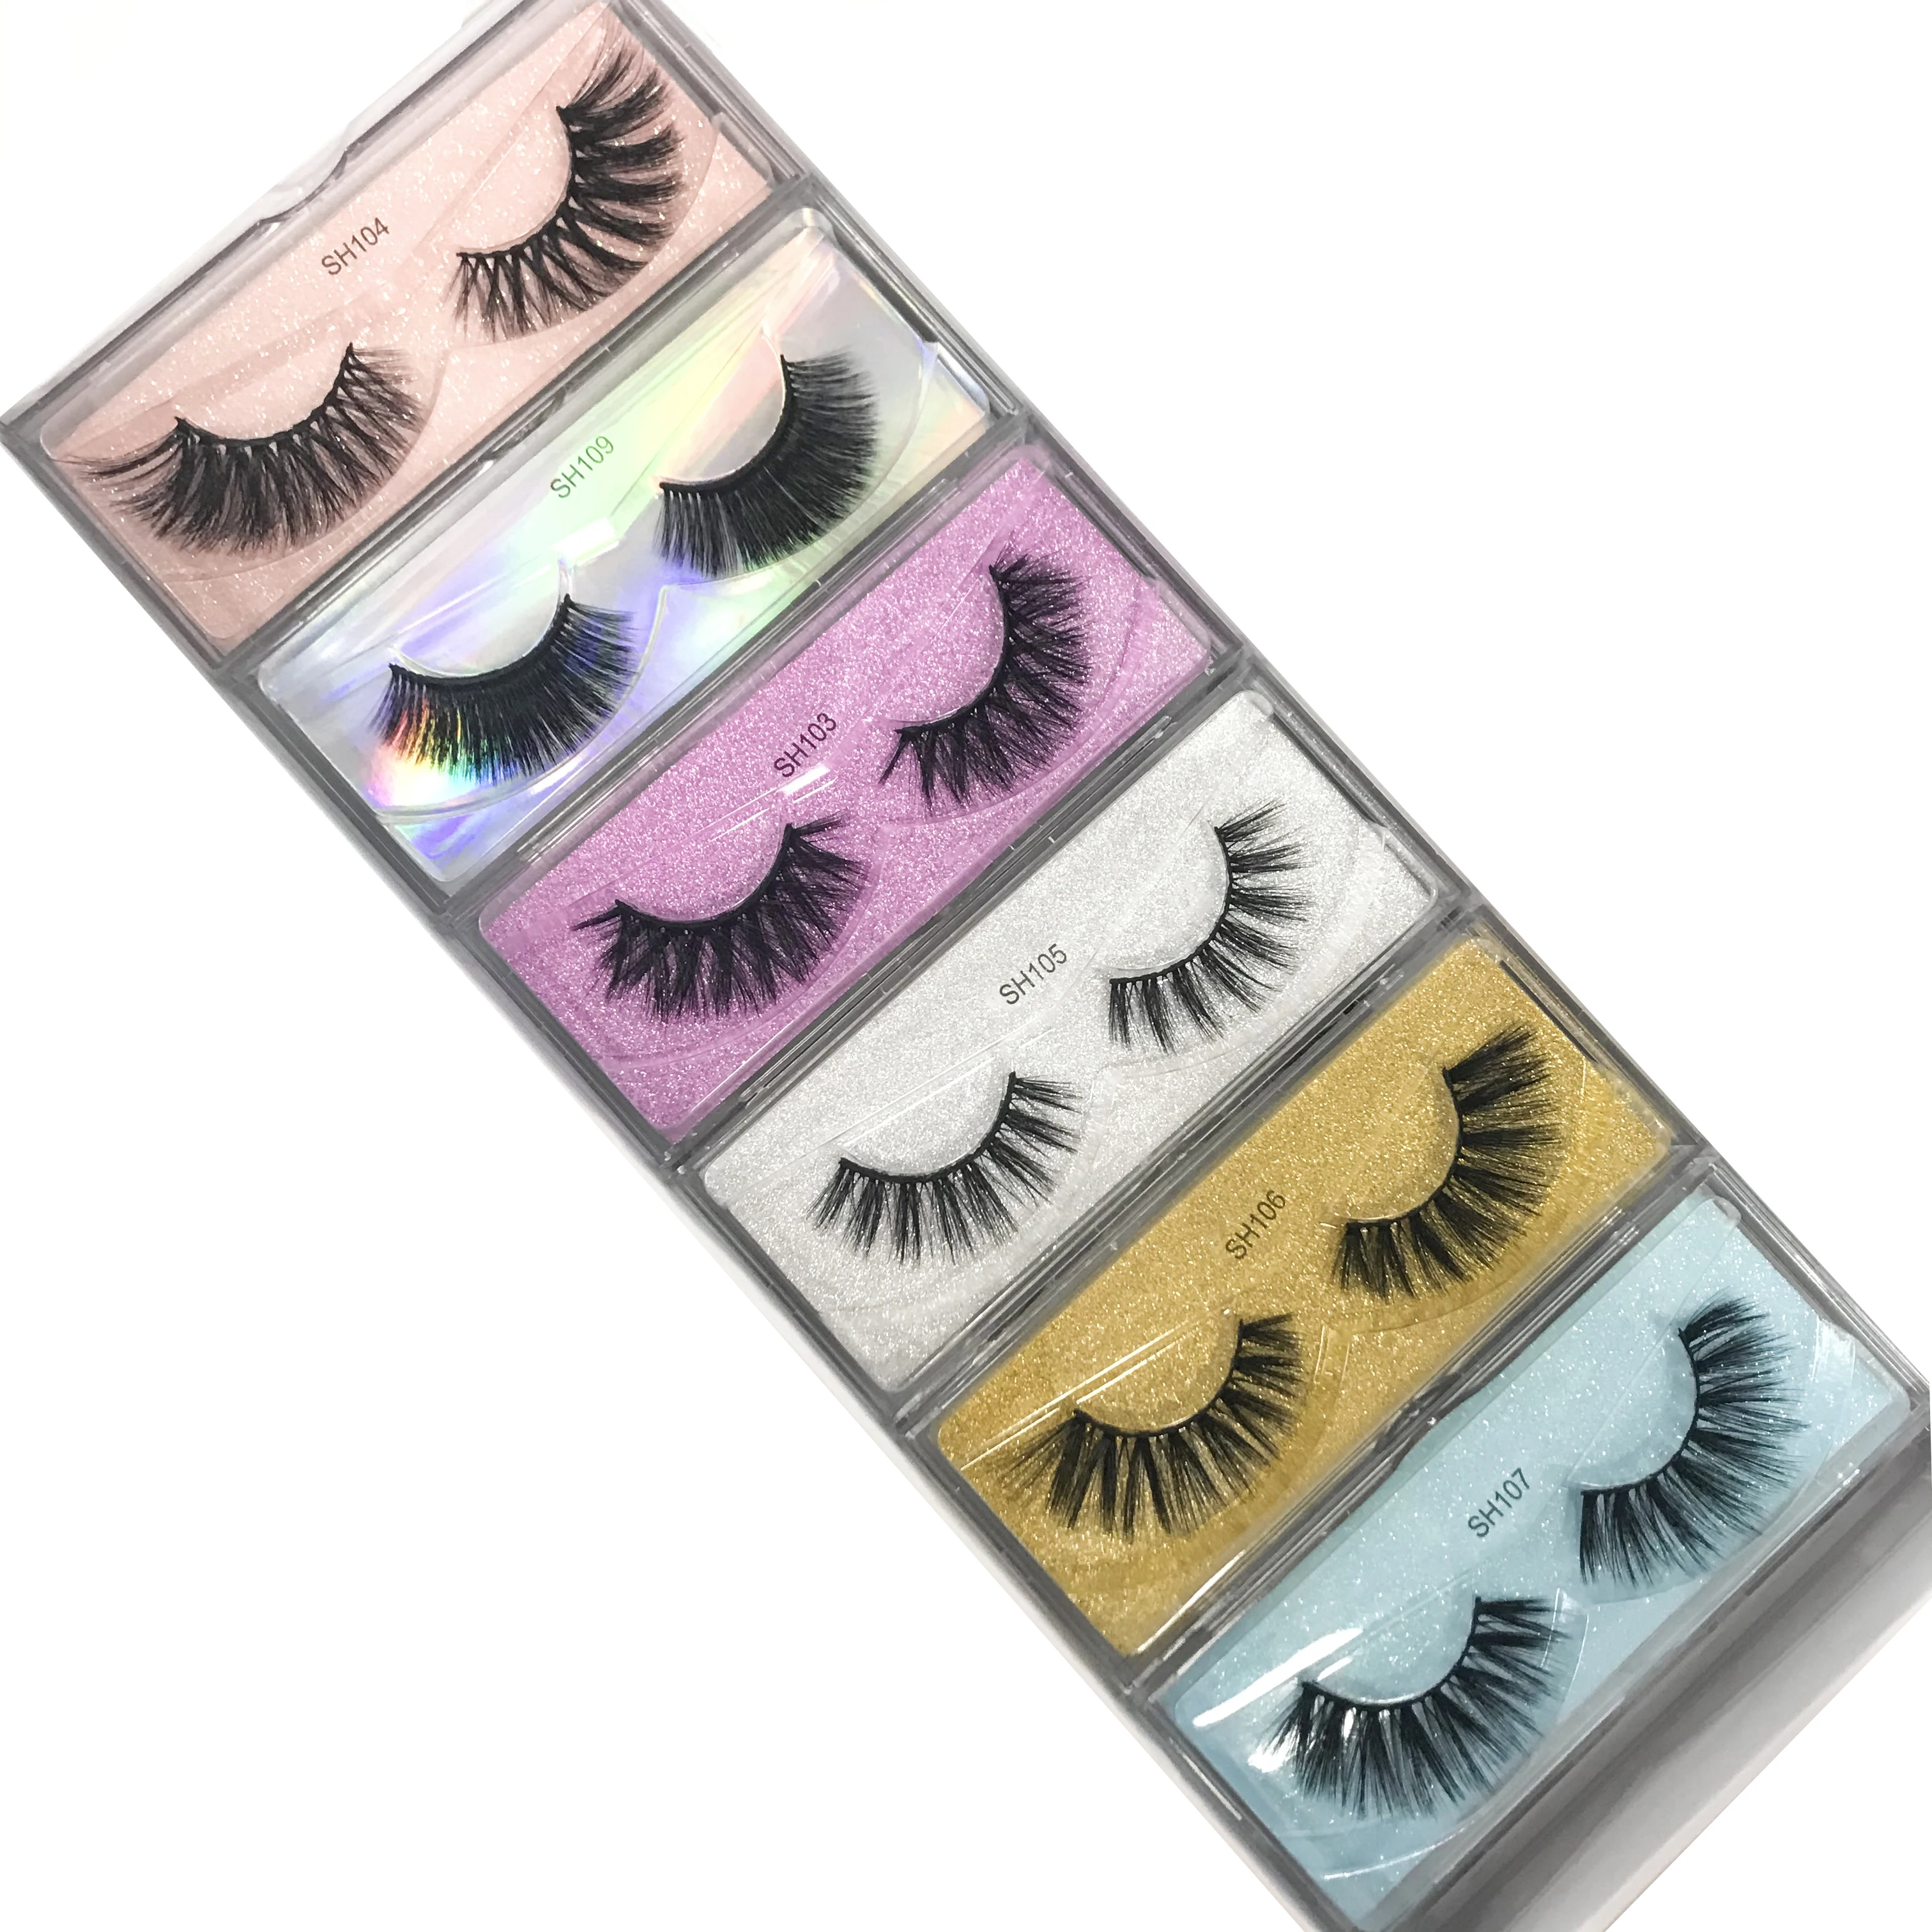 Shegoal Wholesale 30 pairs Eyelashes 3D Mink Lashes Handmade Dramatic Lashes 35 styles Magnet Silk lashes Faux Mink Eyelashes